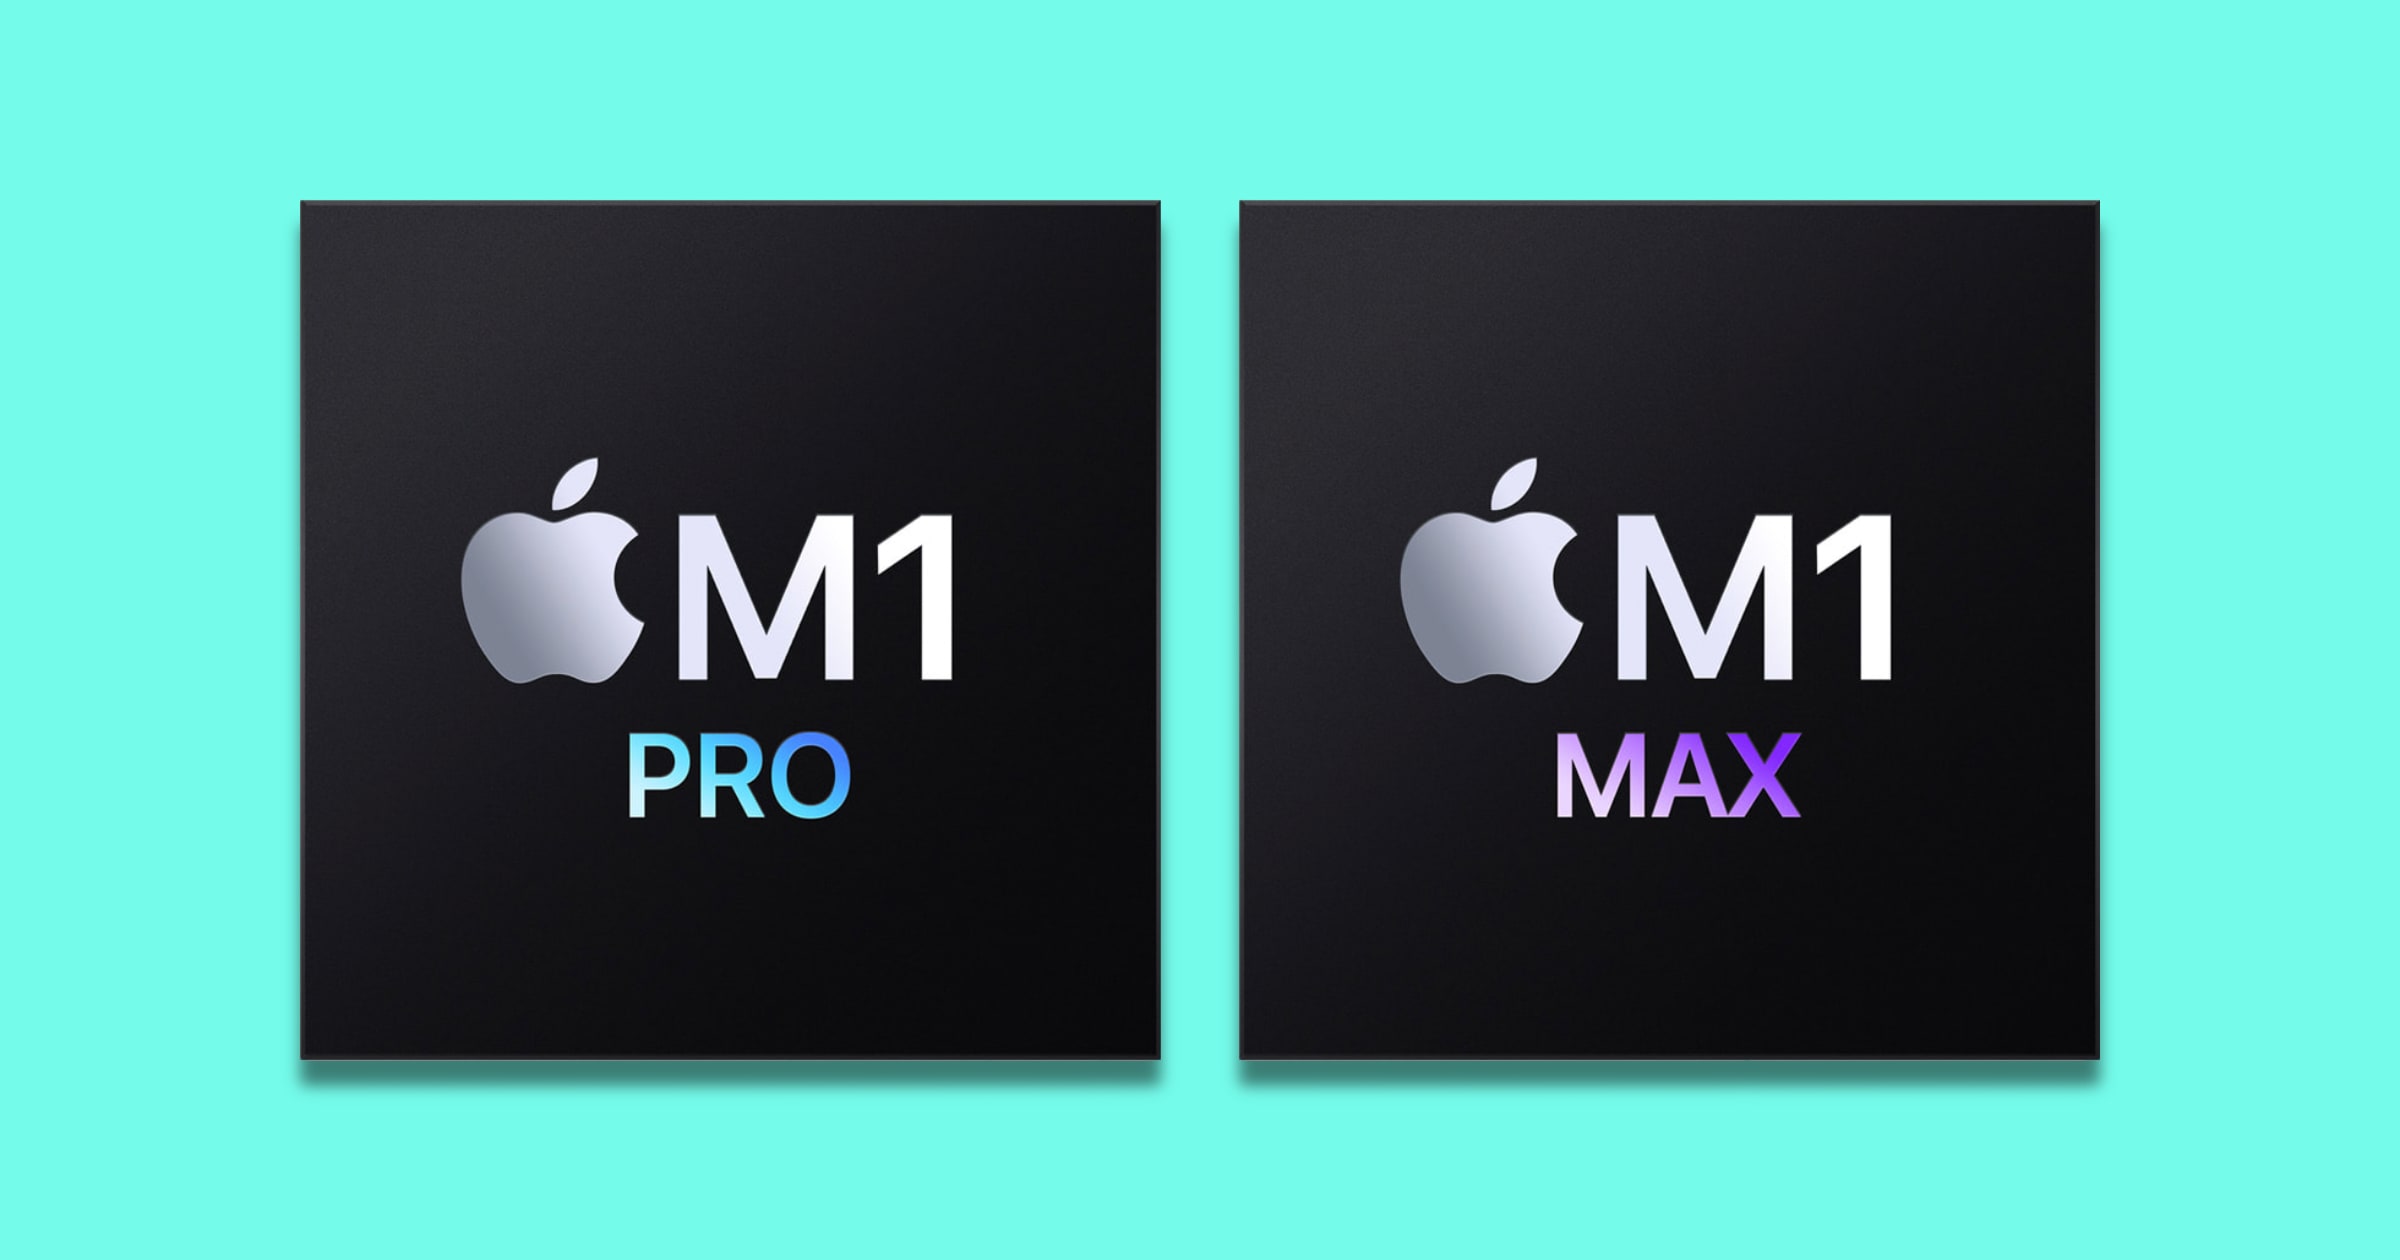 Apple M1 Max vs Intel Alder Lake Core i9 – Who Wins?